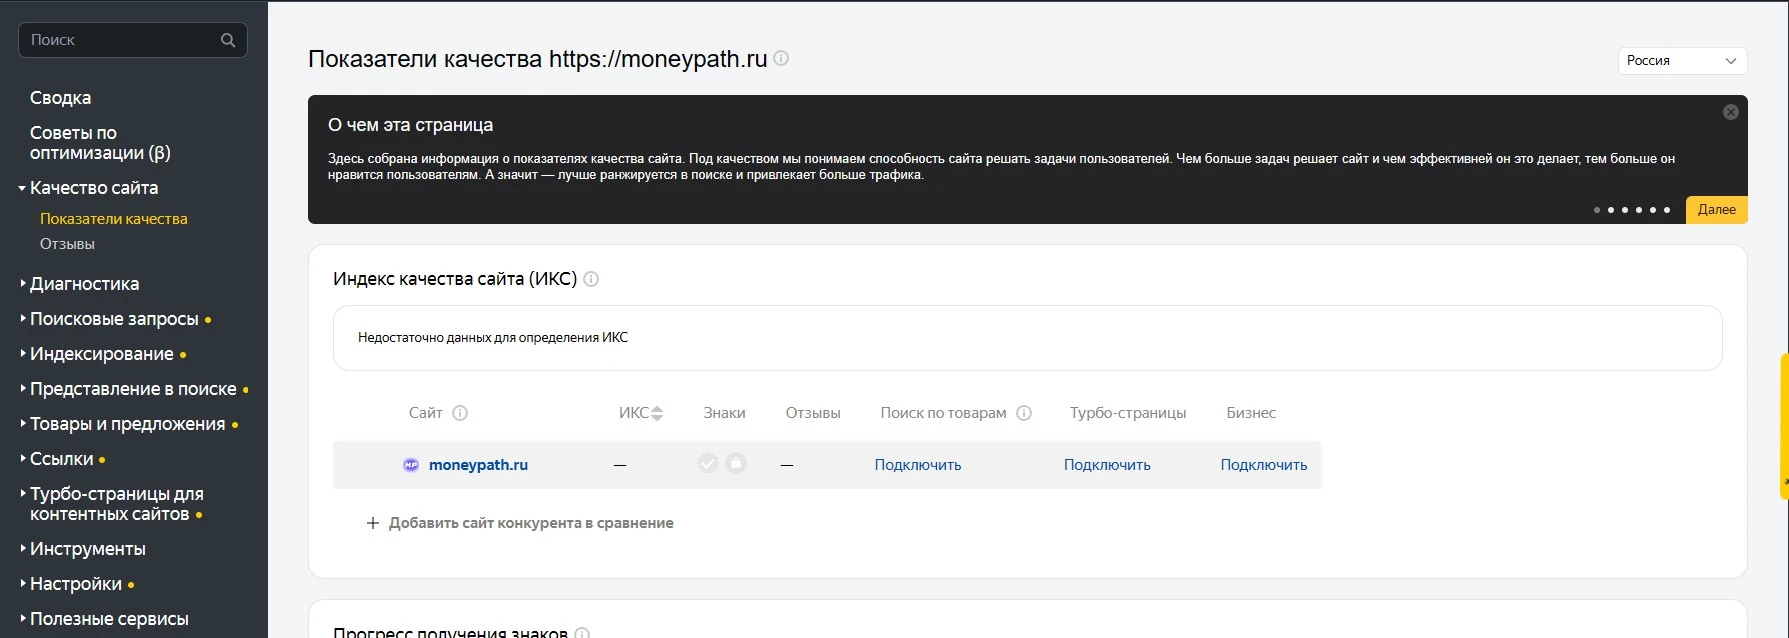 Качество сайта в Яндекс.Вебмастер